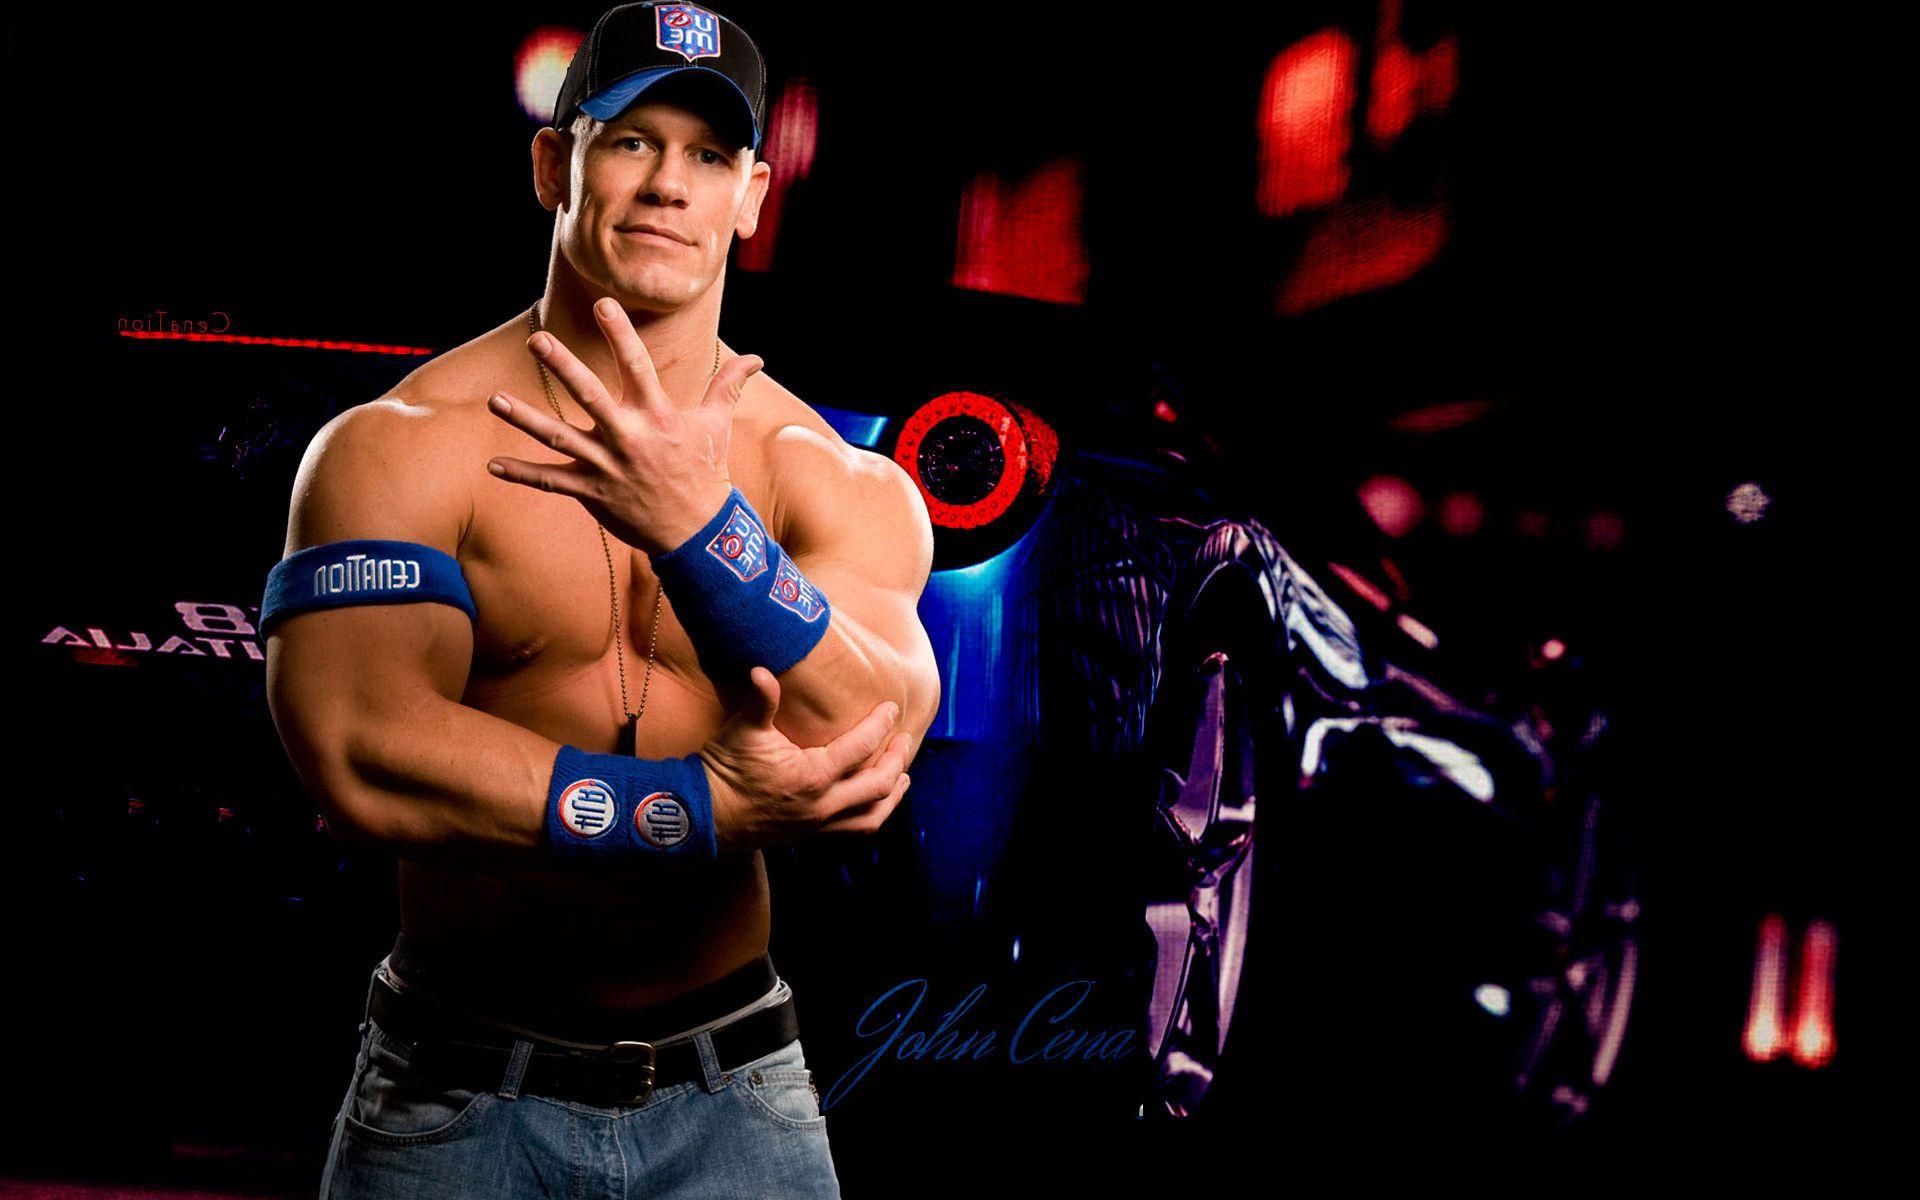 John Cena Wallpapers Top Free John Cena Backgrounds Wallpaperaccess